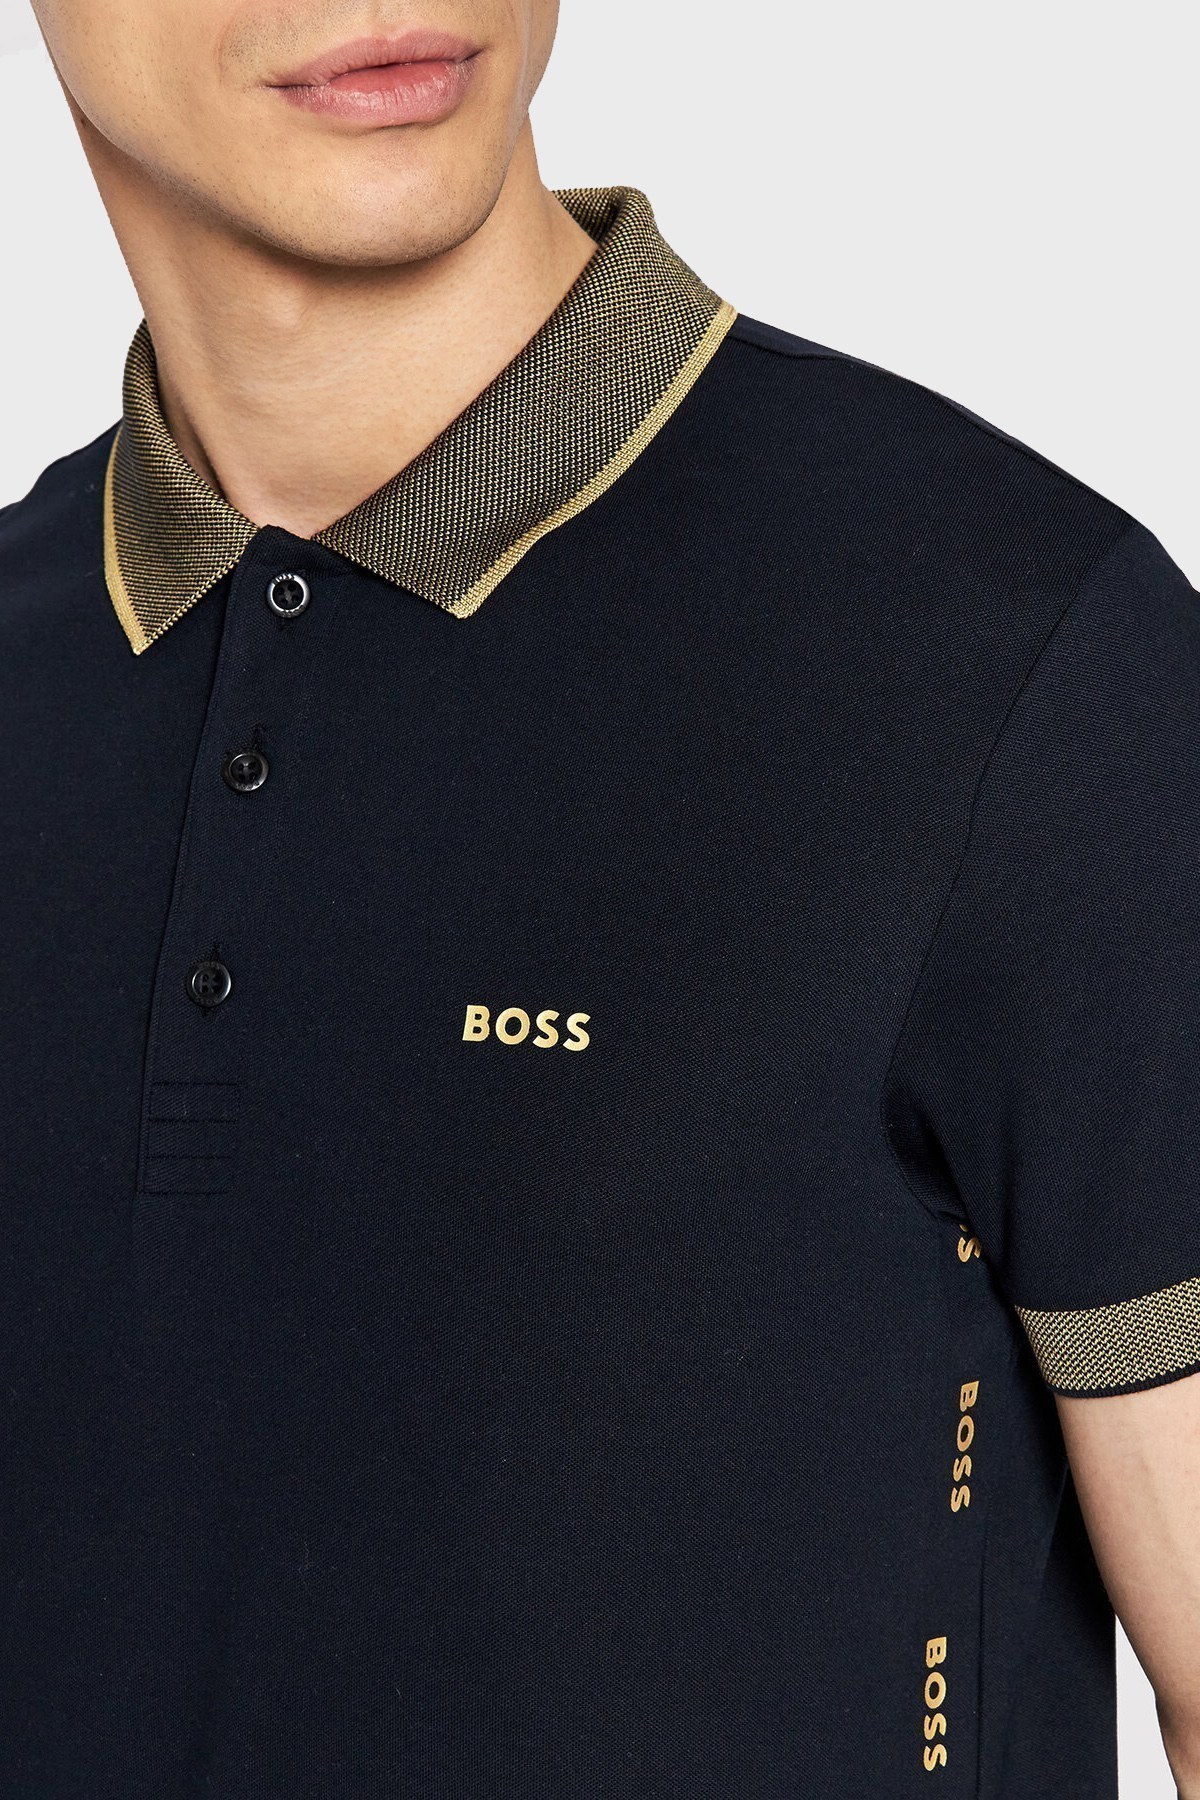 Boss Kontrast Şeritli Pamuklu Slim Fit T Shirt Erkek Polo 50466442 402 LACİVERT